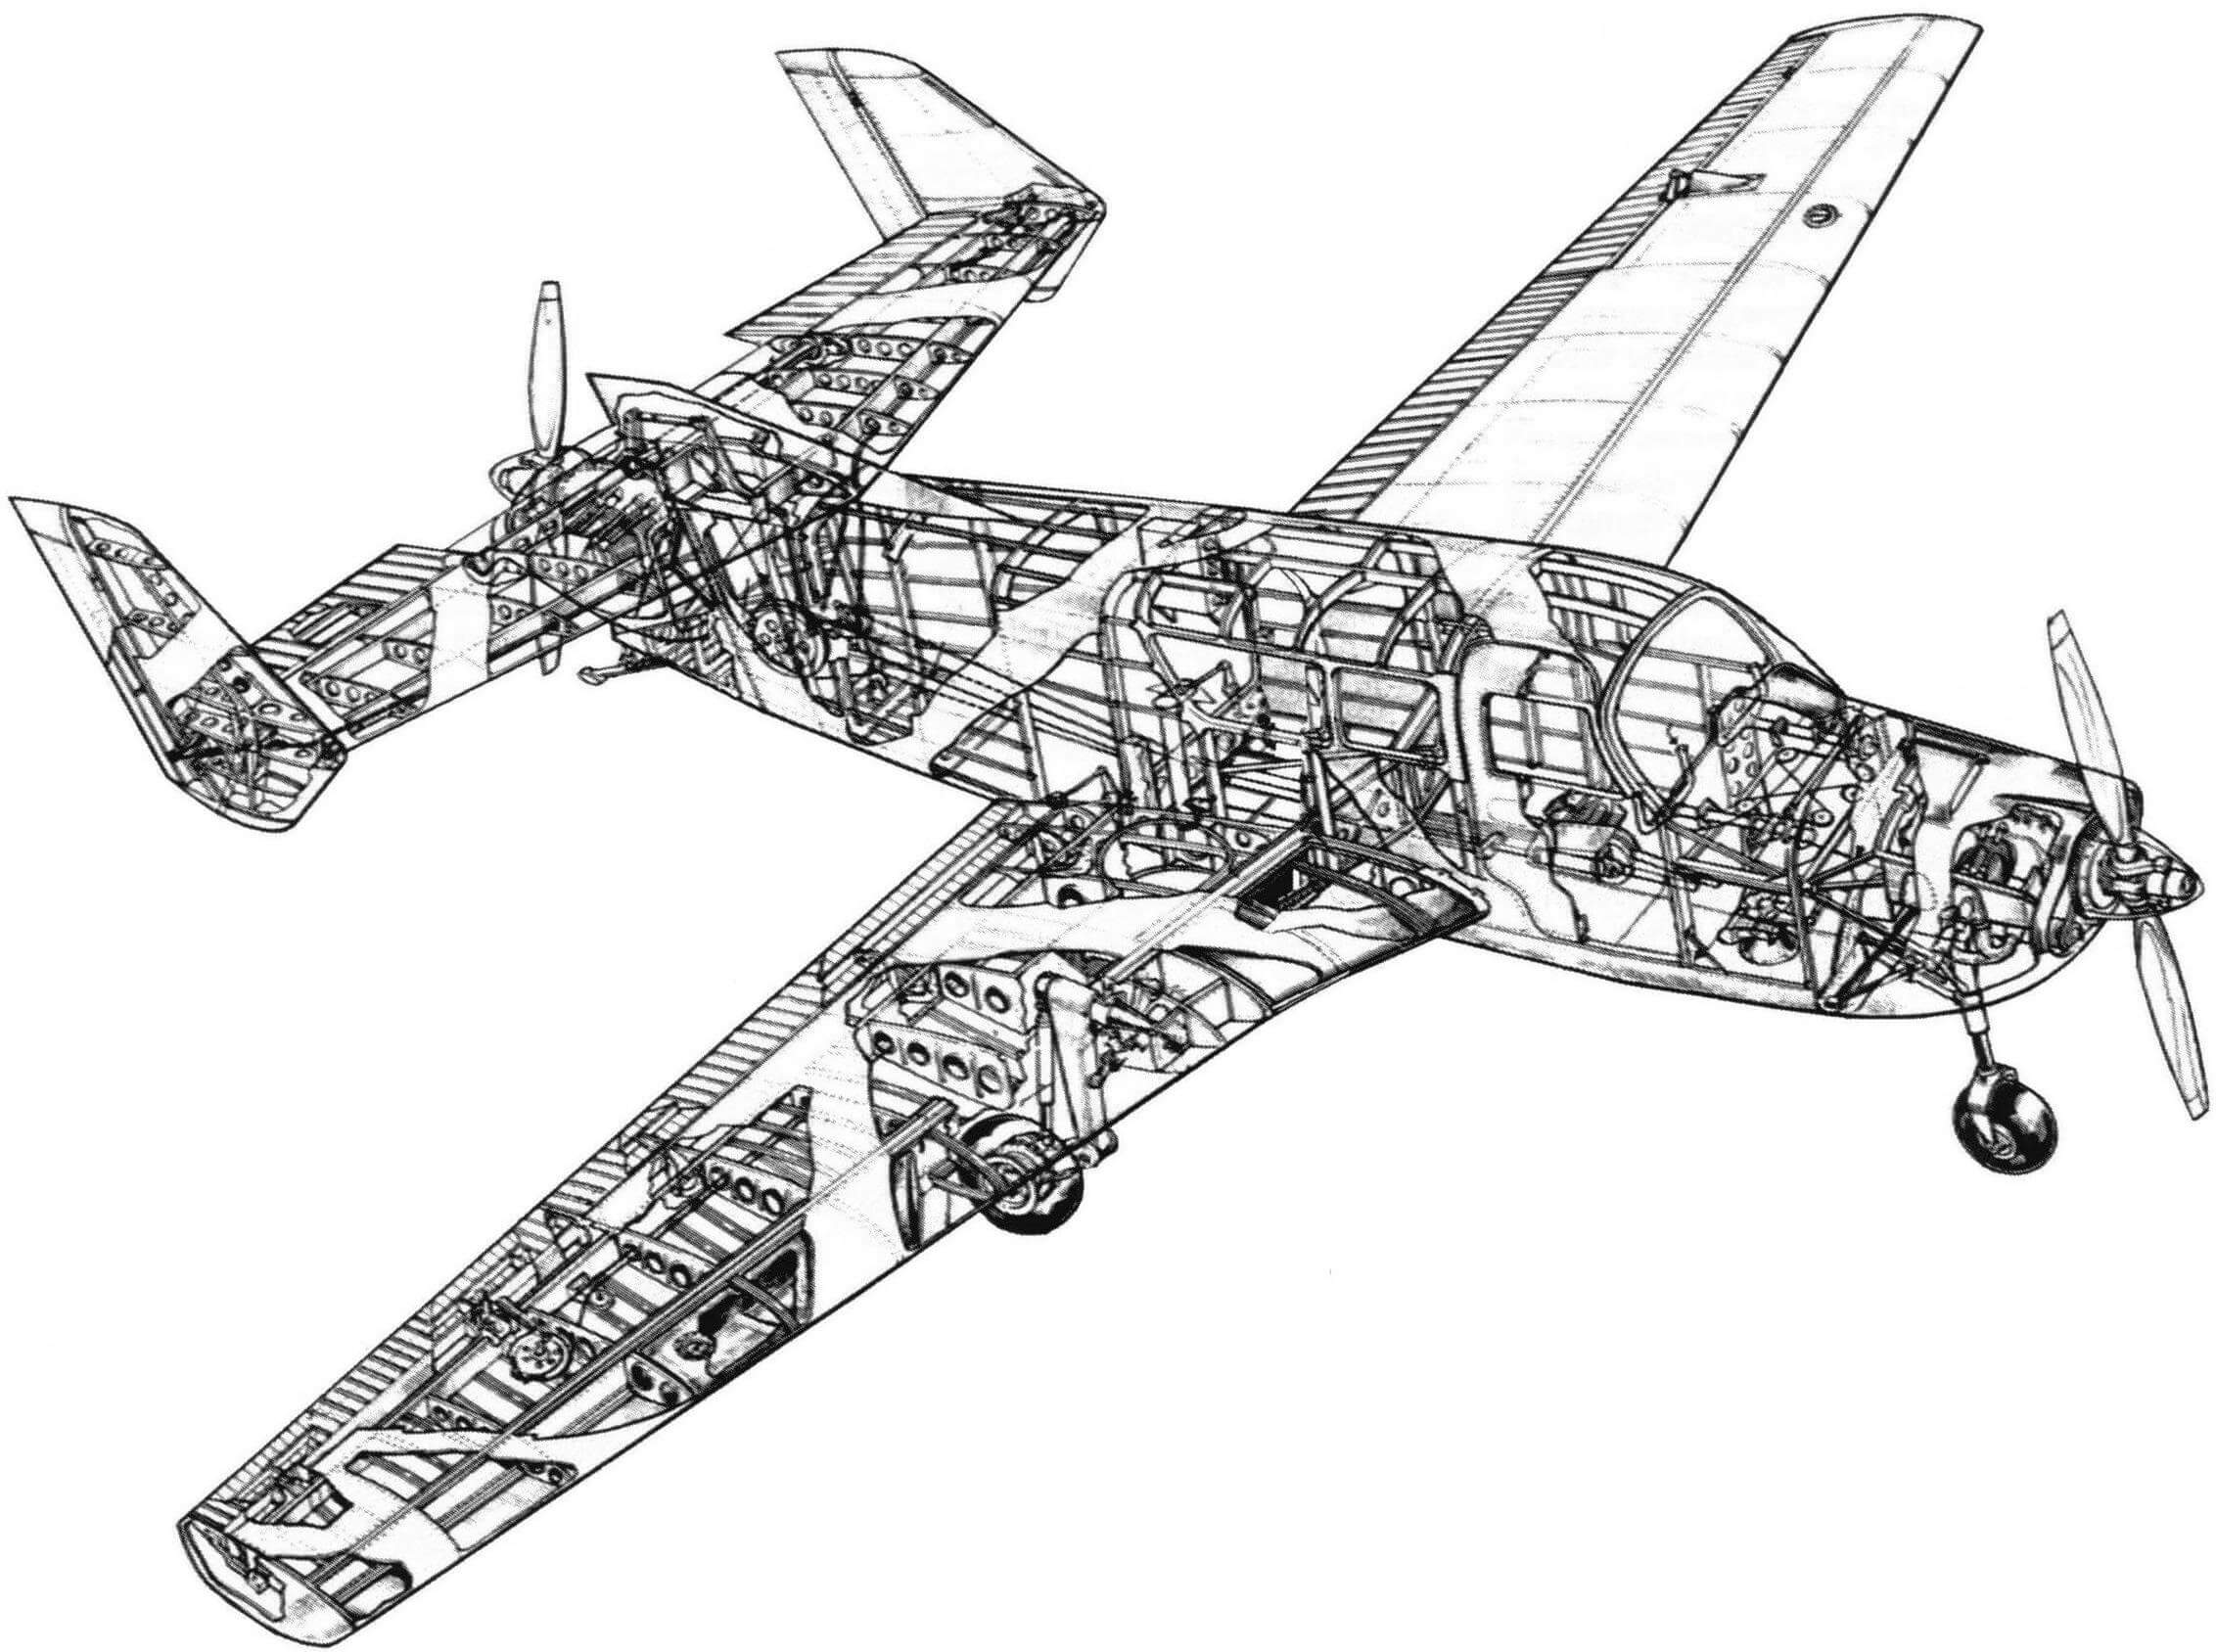 Компоновочная схема двухмоторного самолета «Moynet 360/4 Jupiter»